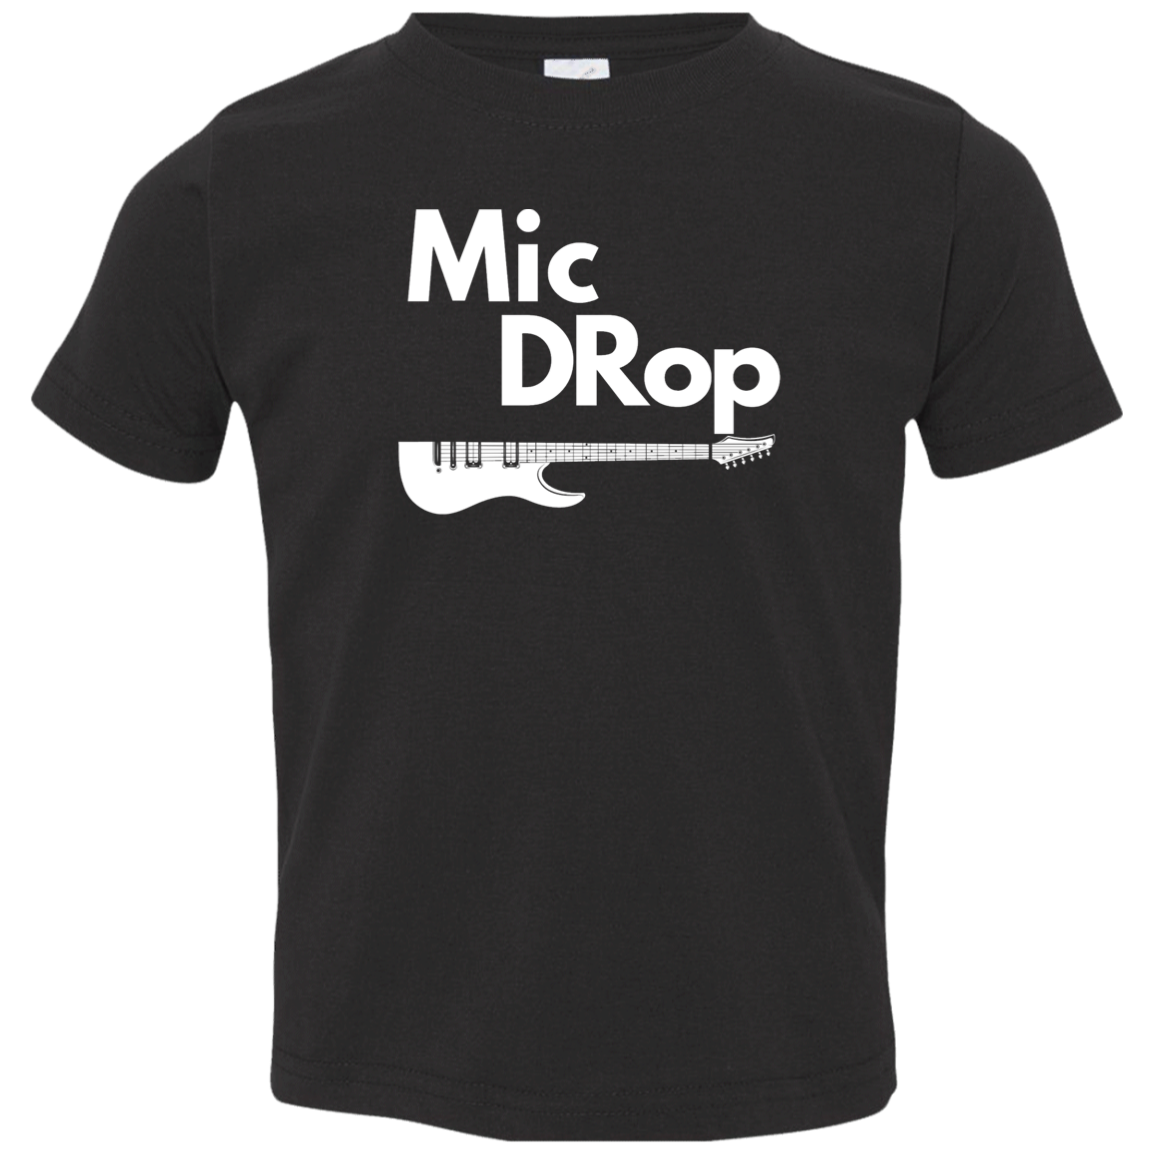 Mic DRop Toddler Jersey T-Shirt